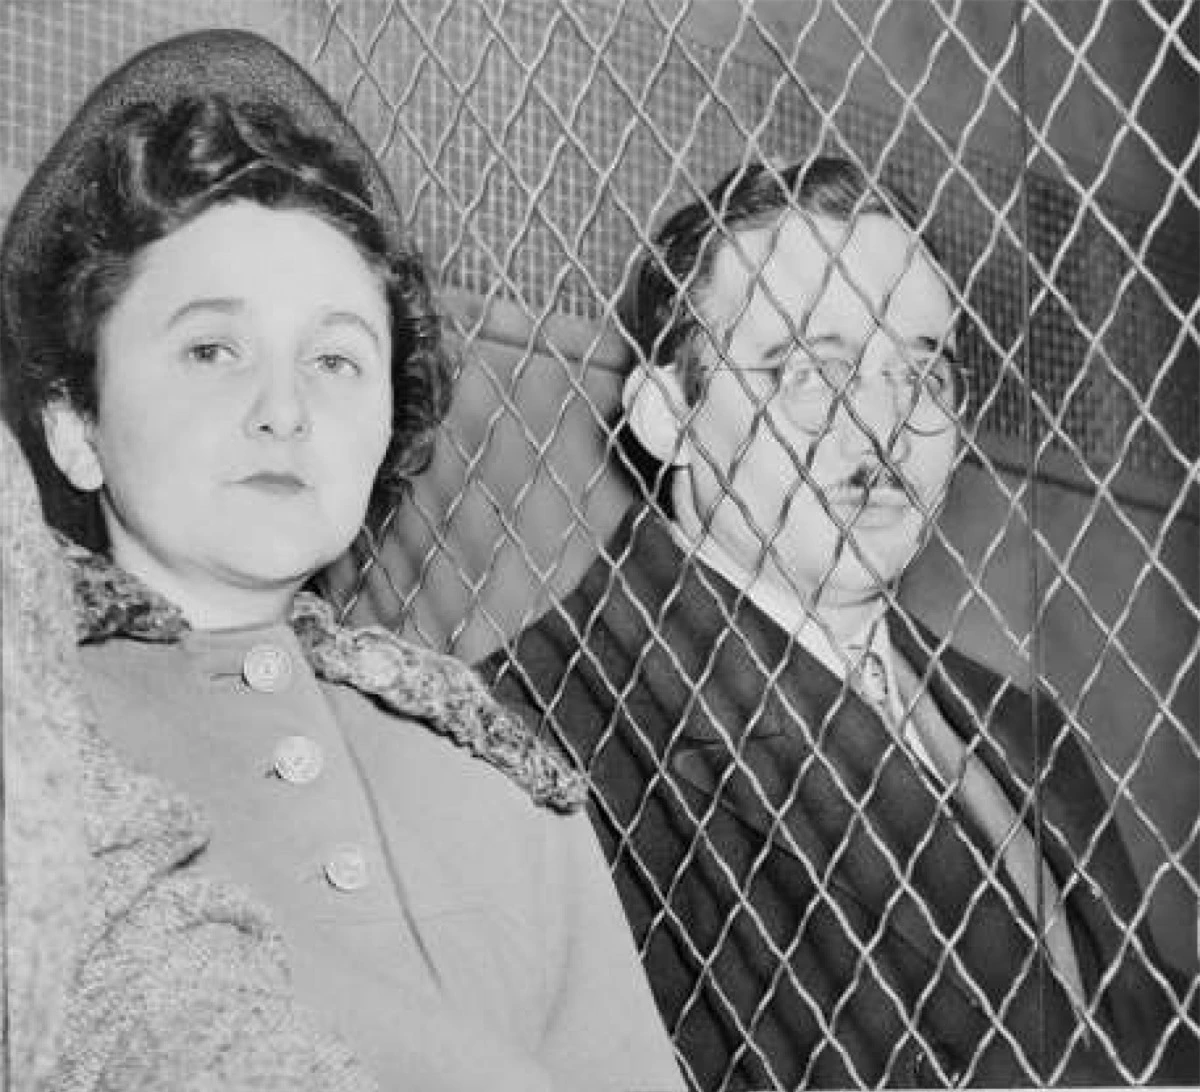 Julius (1917–1953) và Ethel (1916–1953) Rosenberg: Là những công dân Mỹ, gia đình Rosenberg bị cáo buộc cung cấp các thông tin tuyệt mật về công nghệ vũ khí cho Liên Xô trong suốt Chiến tranh Lạnh.